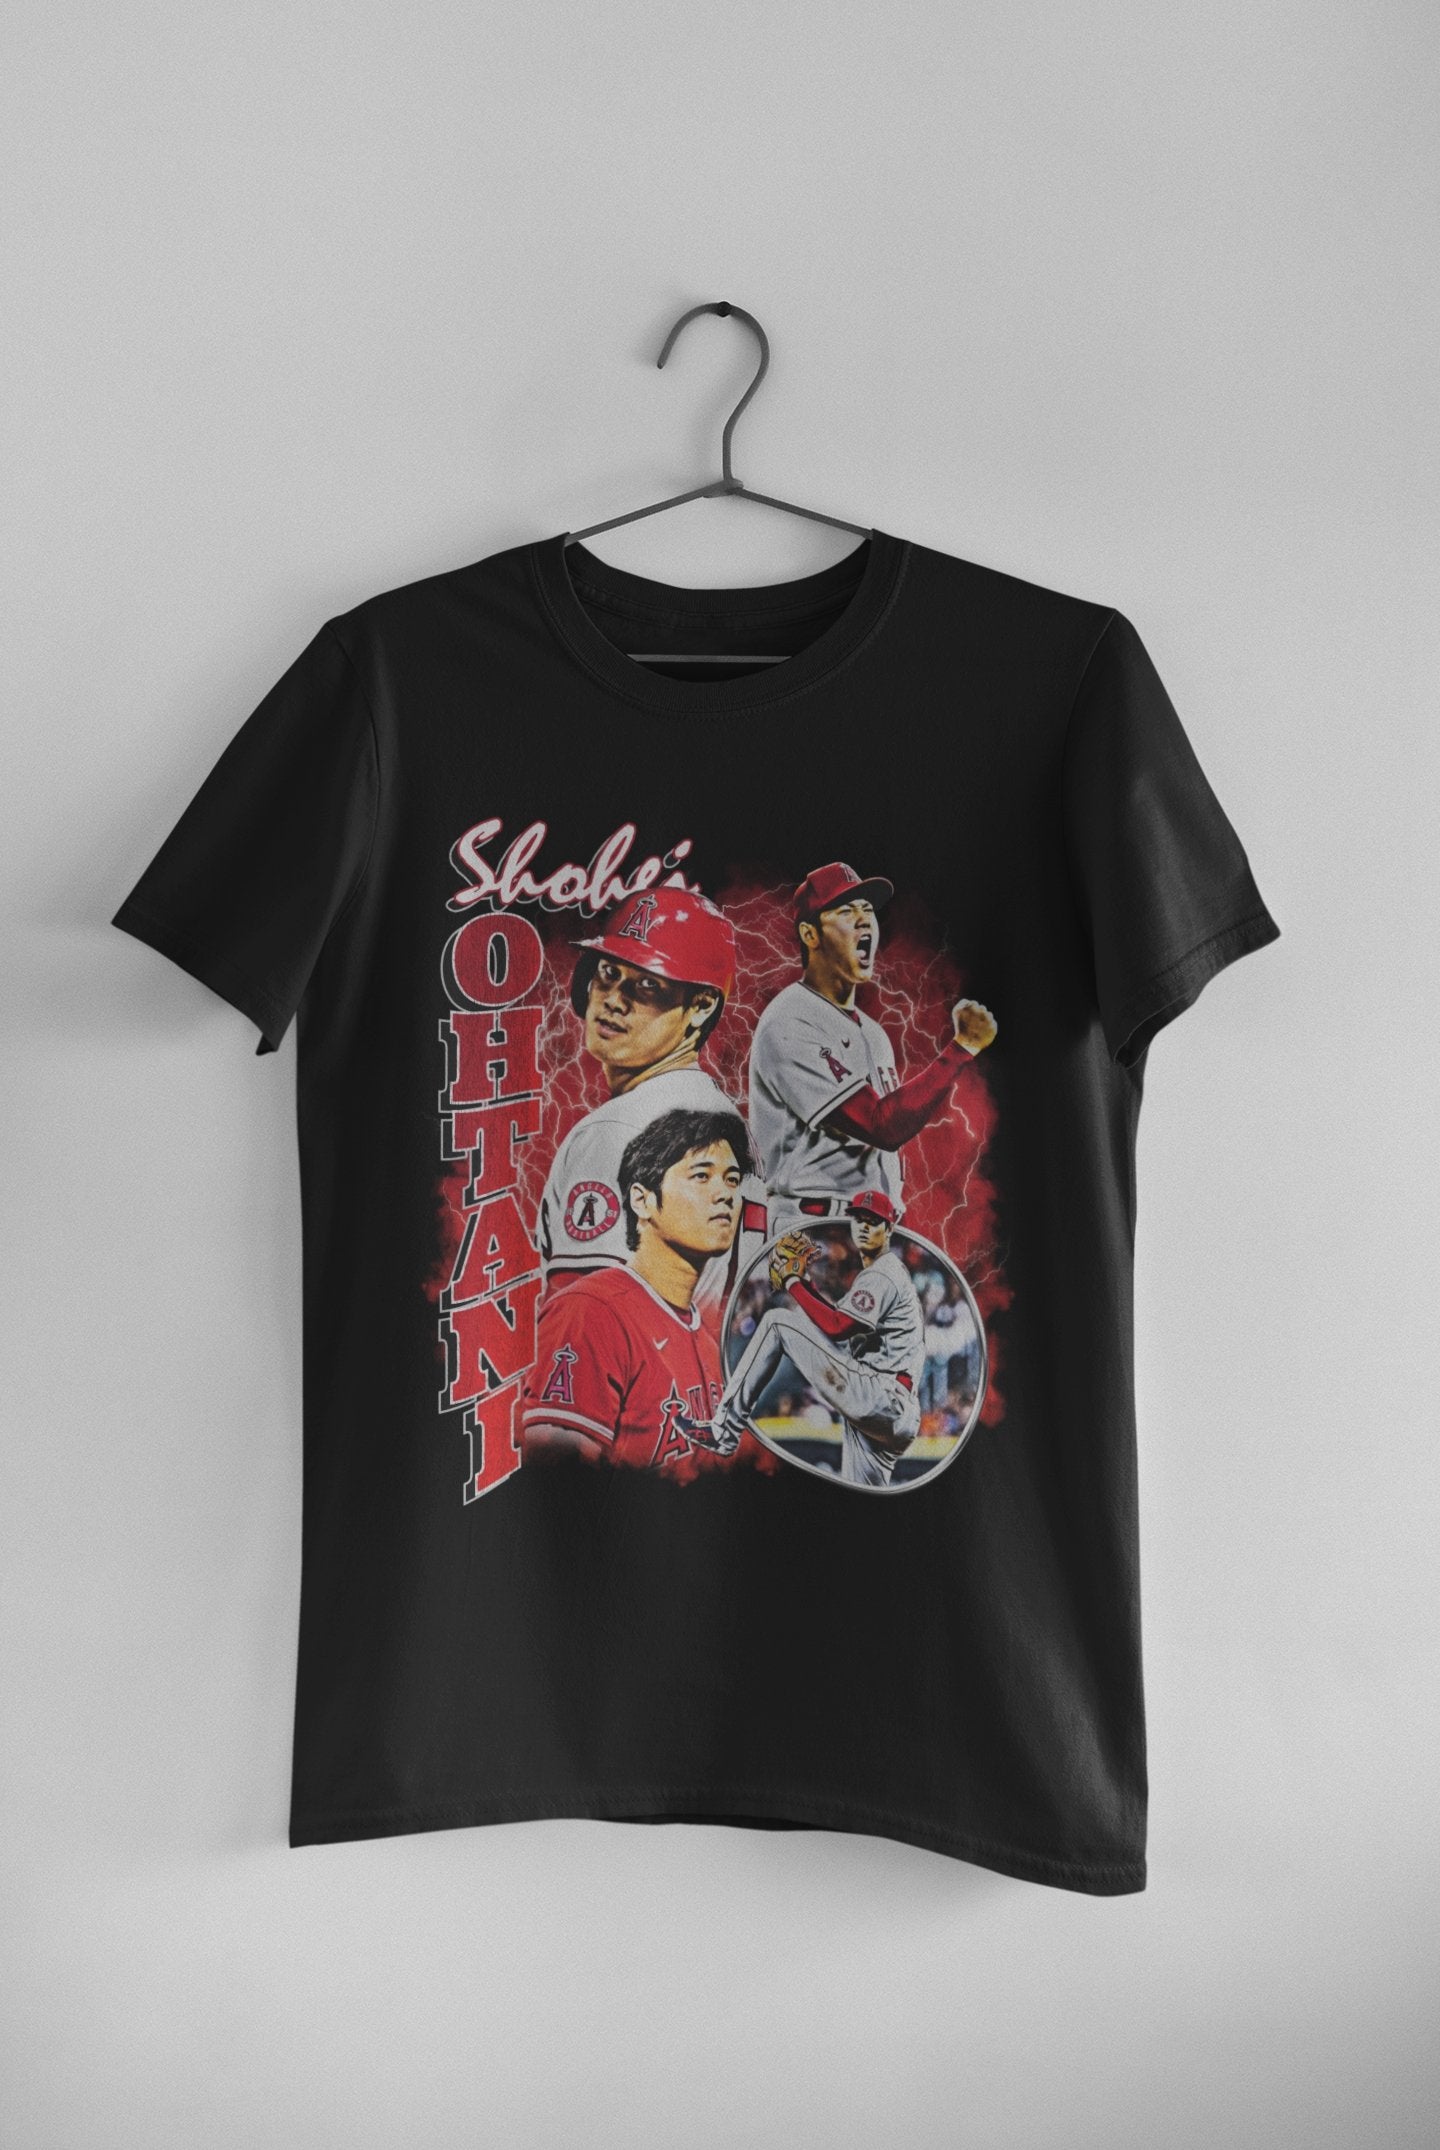 Shohei Ohtani Shirt Shohei Ohtani Vintage Shirt Shohei 